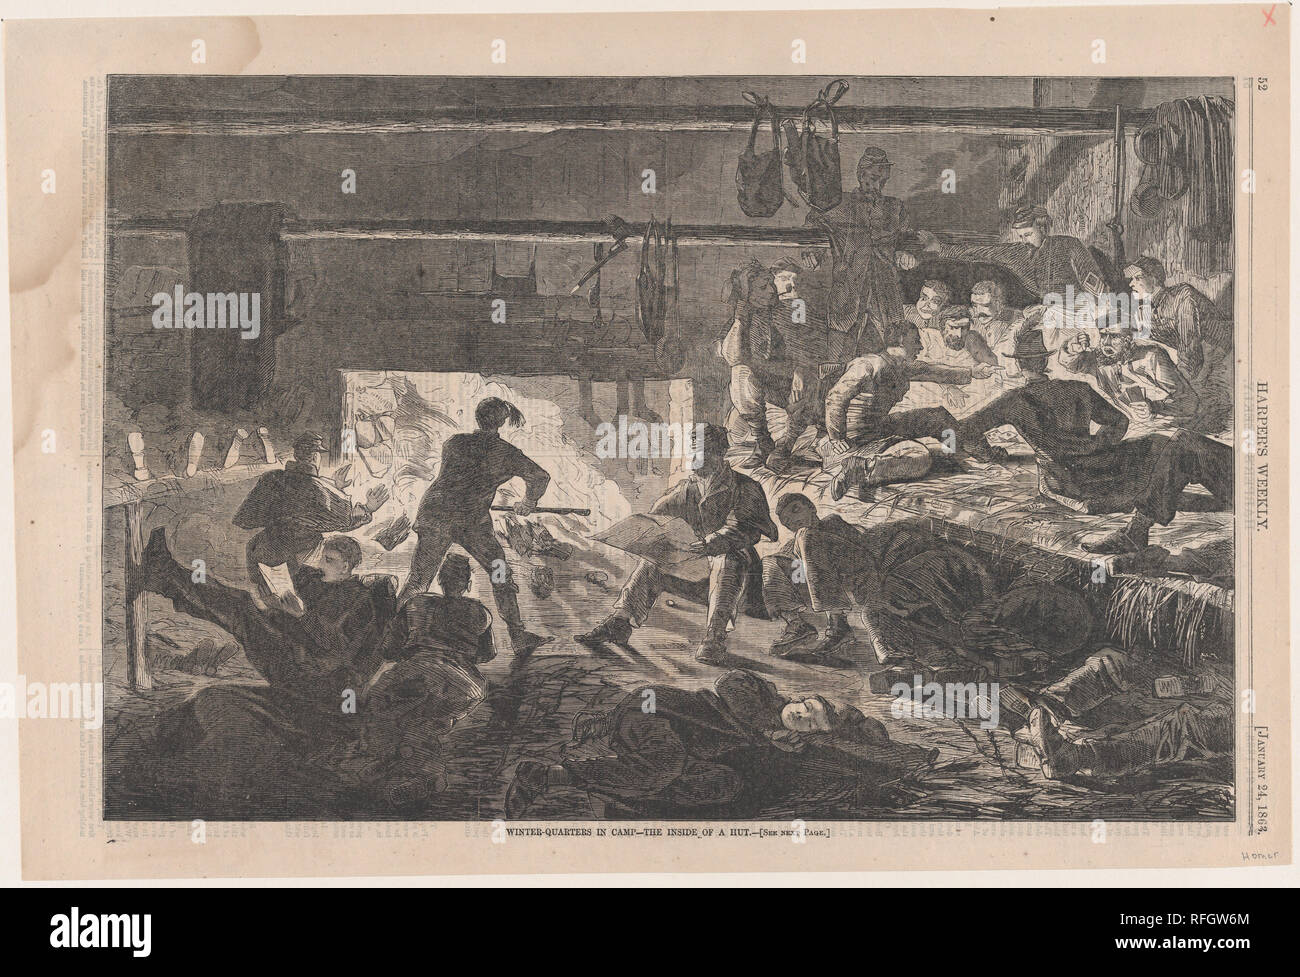 Winter Quarters in Camp - all'interno di una capanna (Harper's Weekly, Vol. VII). Artista: Winslow Homer (American, Boston, Massachusetts 1836-1910 Prouts collo, Maine). Dimensioni: Immagine: 9 1/8 x 13 7/8 in. (23,2 x 35,2 cm) foglio: 10 5/8 x 15 11/16 in. (27 x 39,8 cm). Editore: Harper's settimanale (American, 1857-1916). Data: 24 gennaio 1863. Museo: Metropolitan Museum of Art di New York, Stati Uniti d'America. Foto Stock